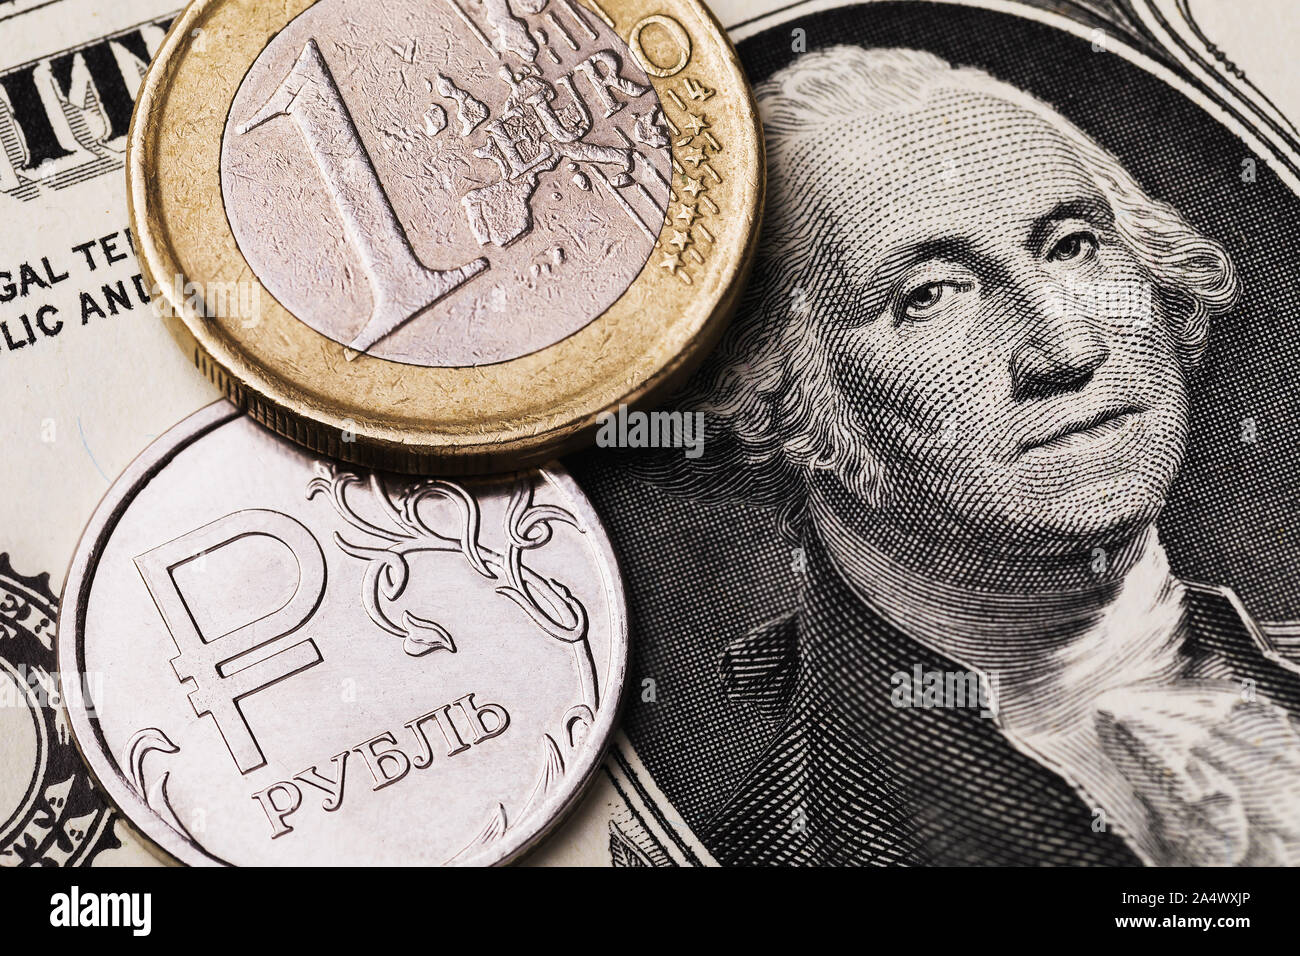 Euro Münze und Russische Rubel vor dem Hintergrund von einem Dollar Bill, close-up. Die Münze hat eine Inschrift in russischen Buchstaben Rubel Stockfoto